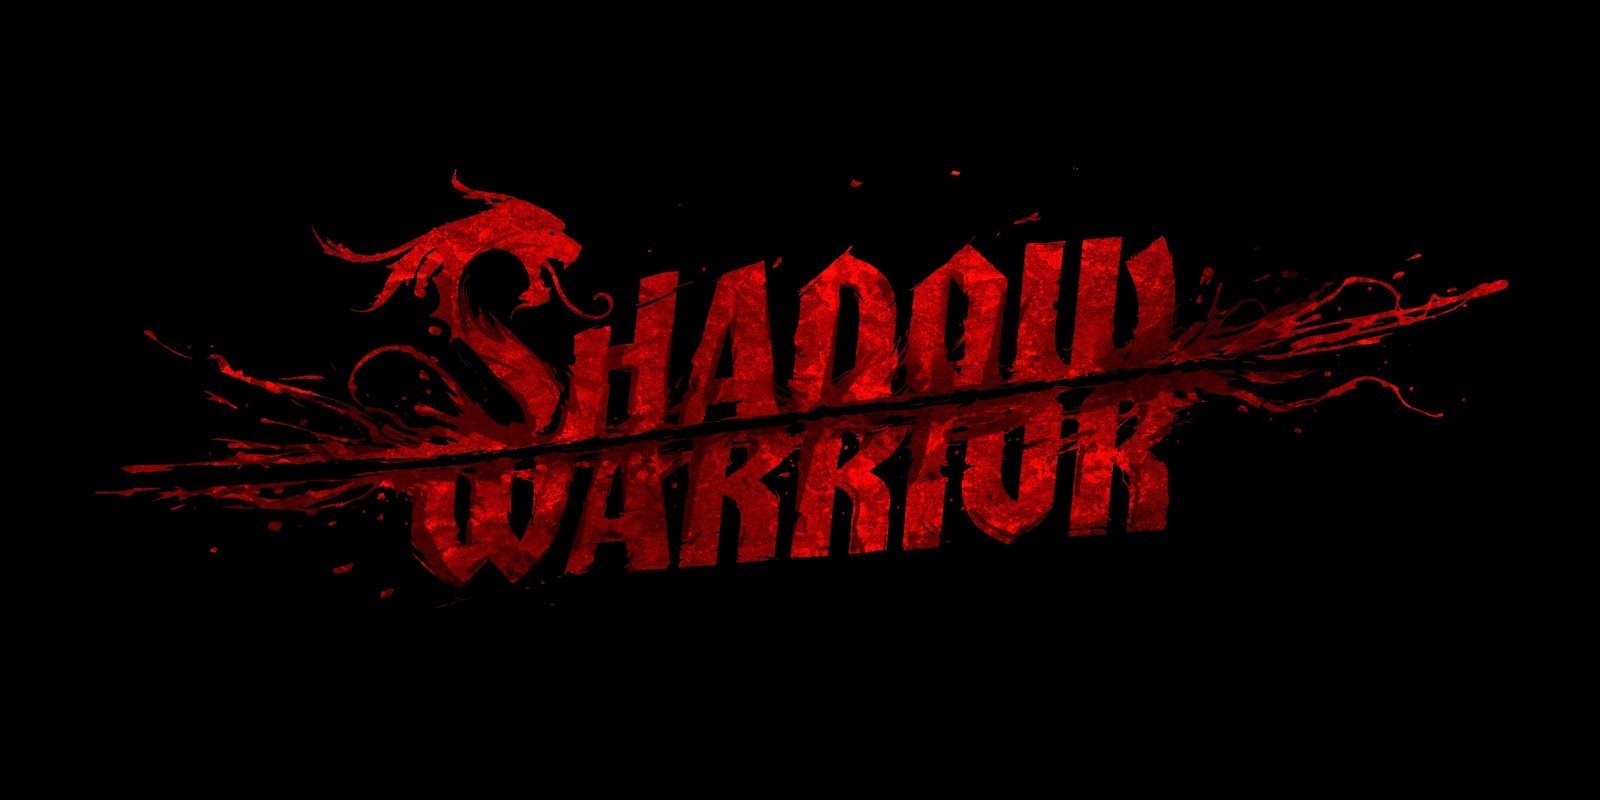 Steam shadow warrior classic redux фото 48